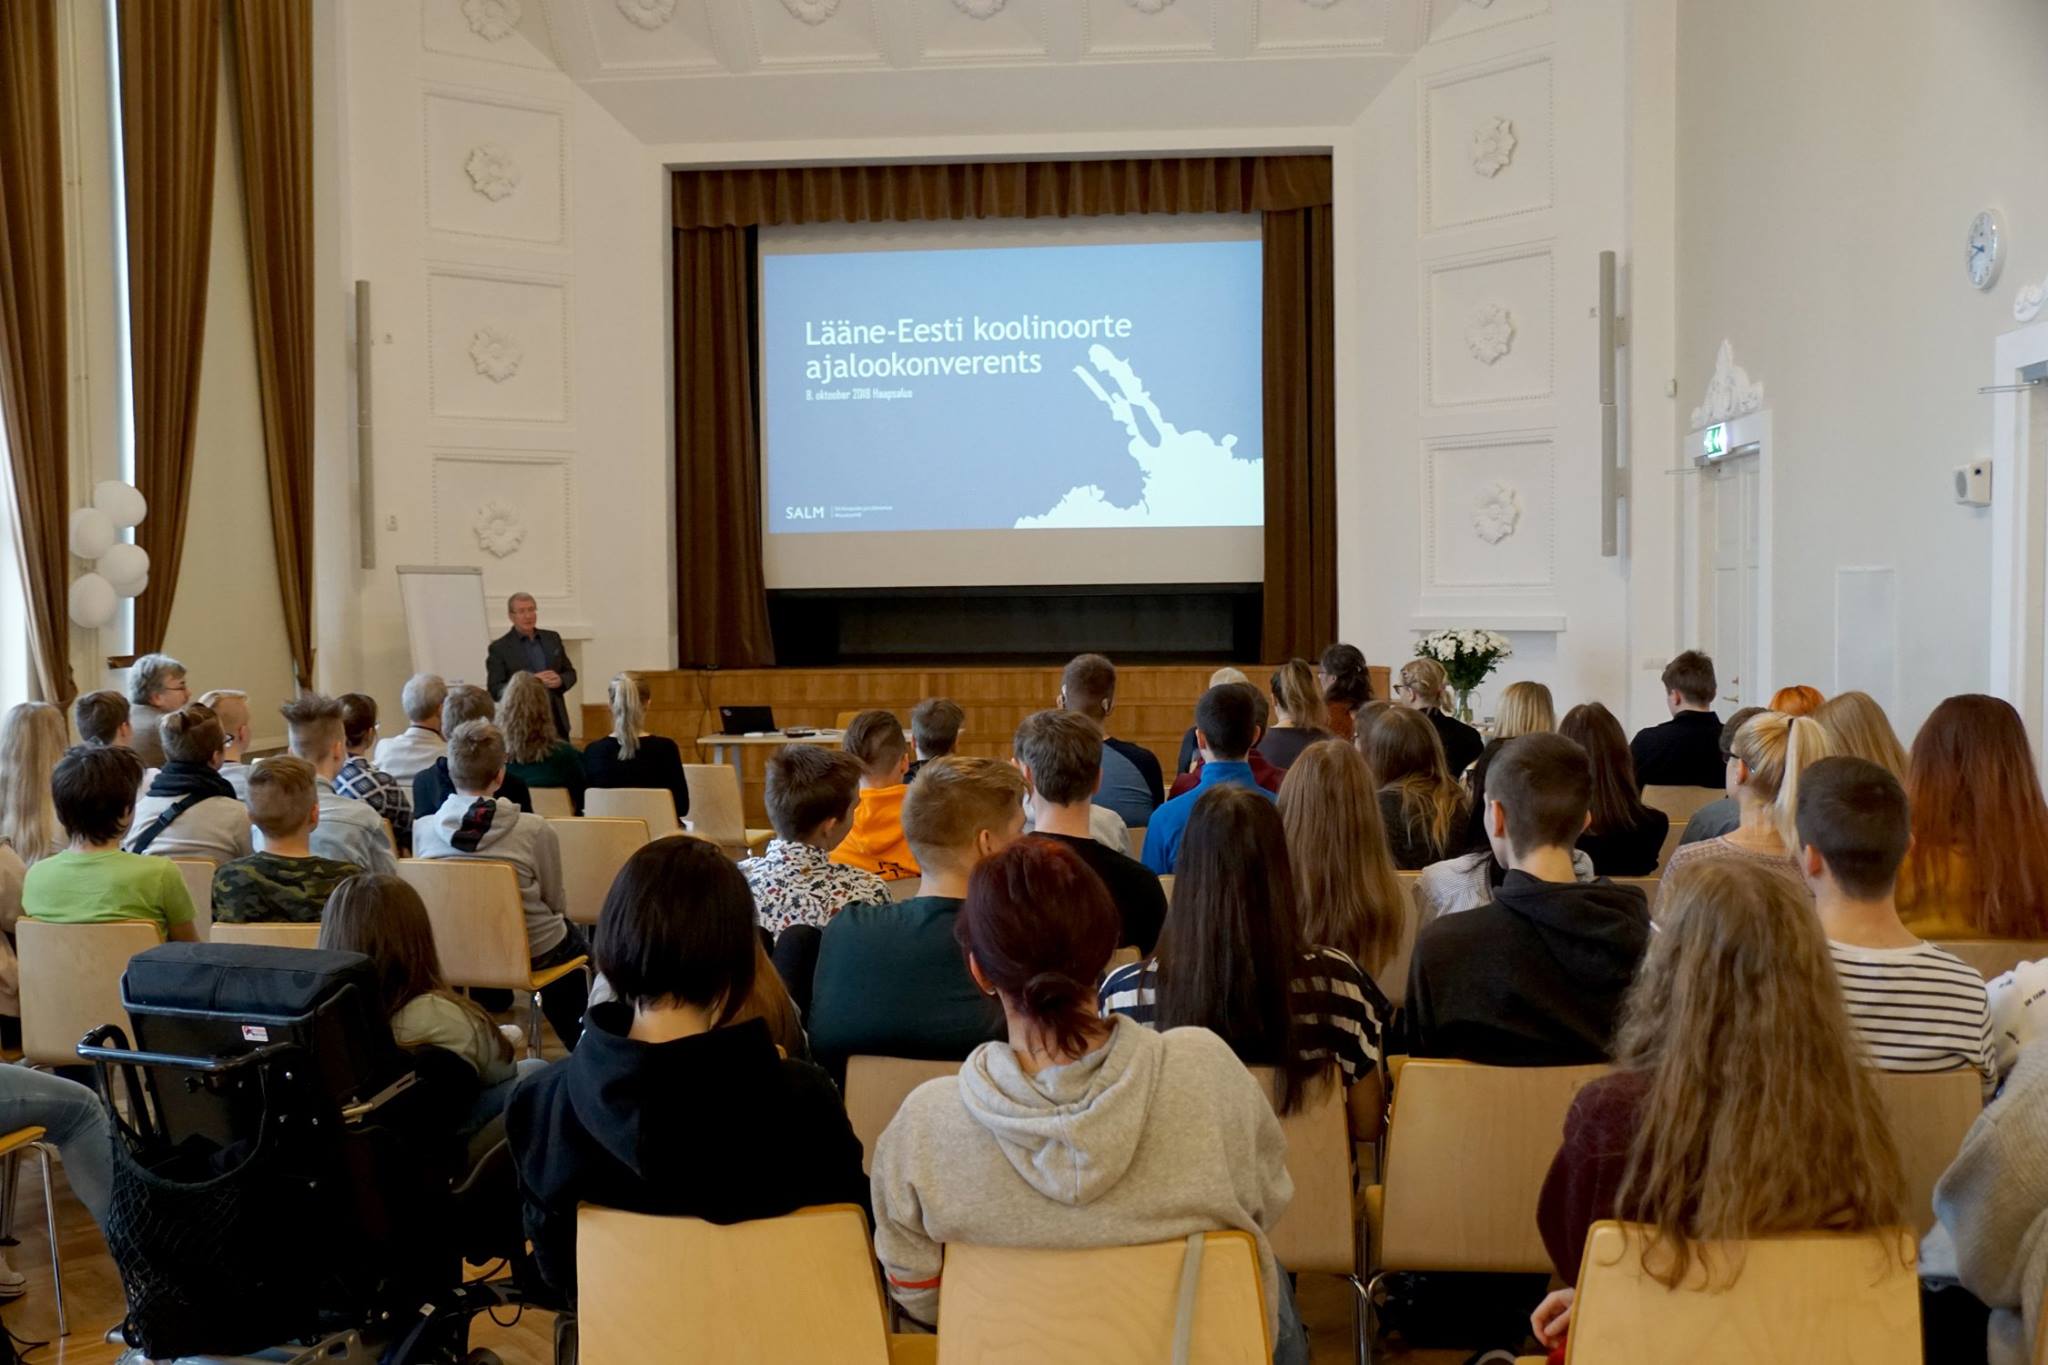 Kolmas Lääne-Eesti noorte ajalookonverents toimub 7. oktoobril